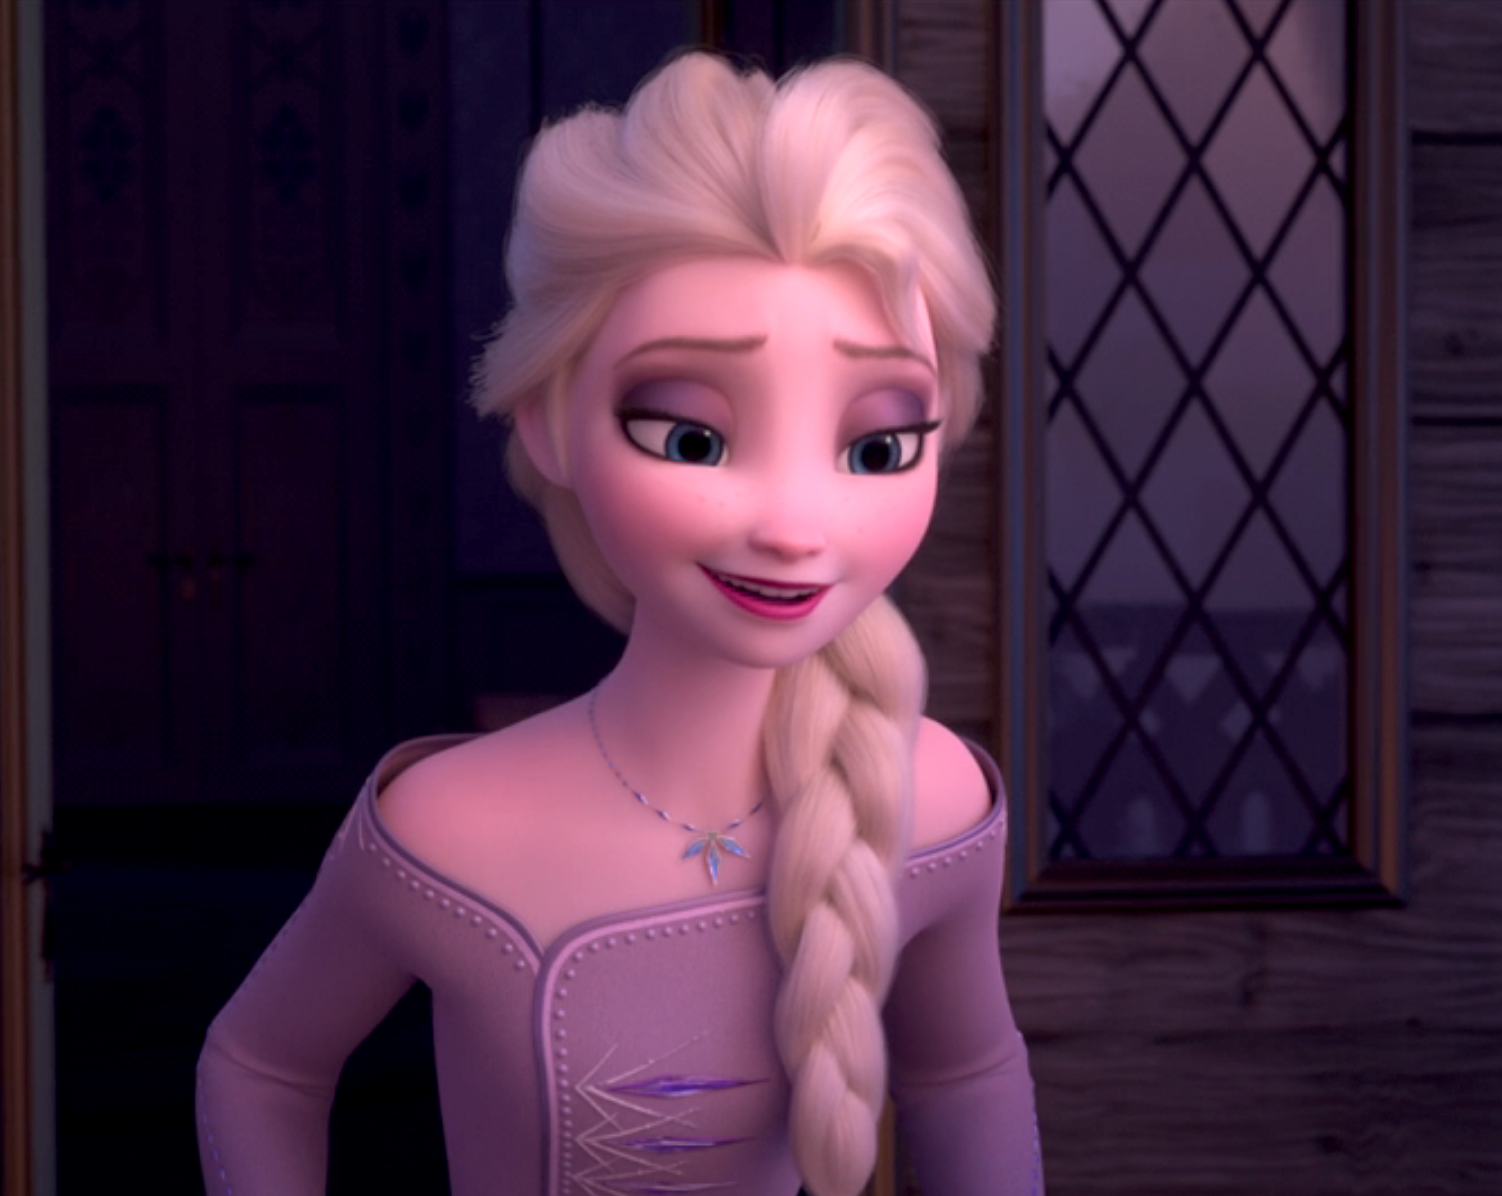 Closeup of Elsa